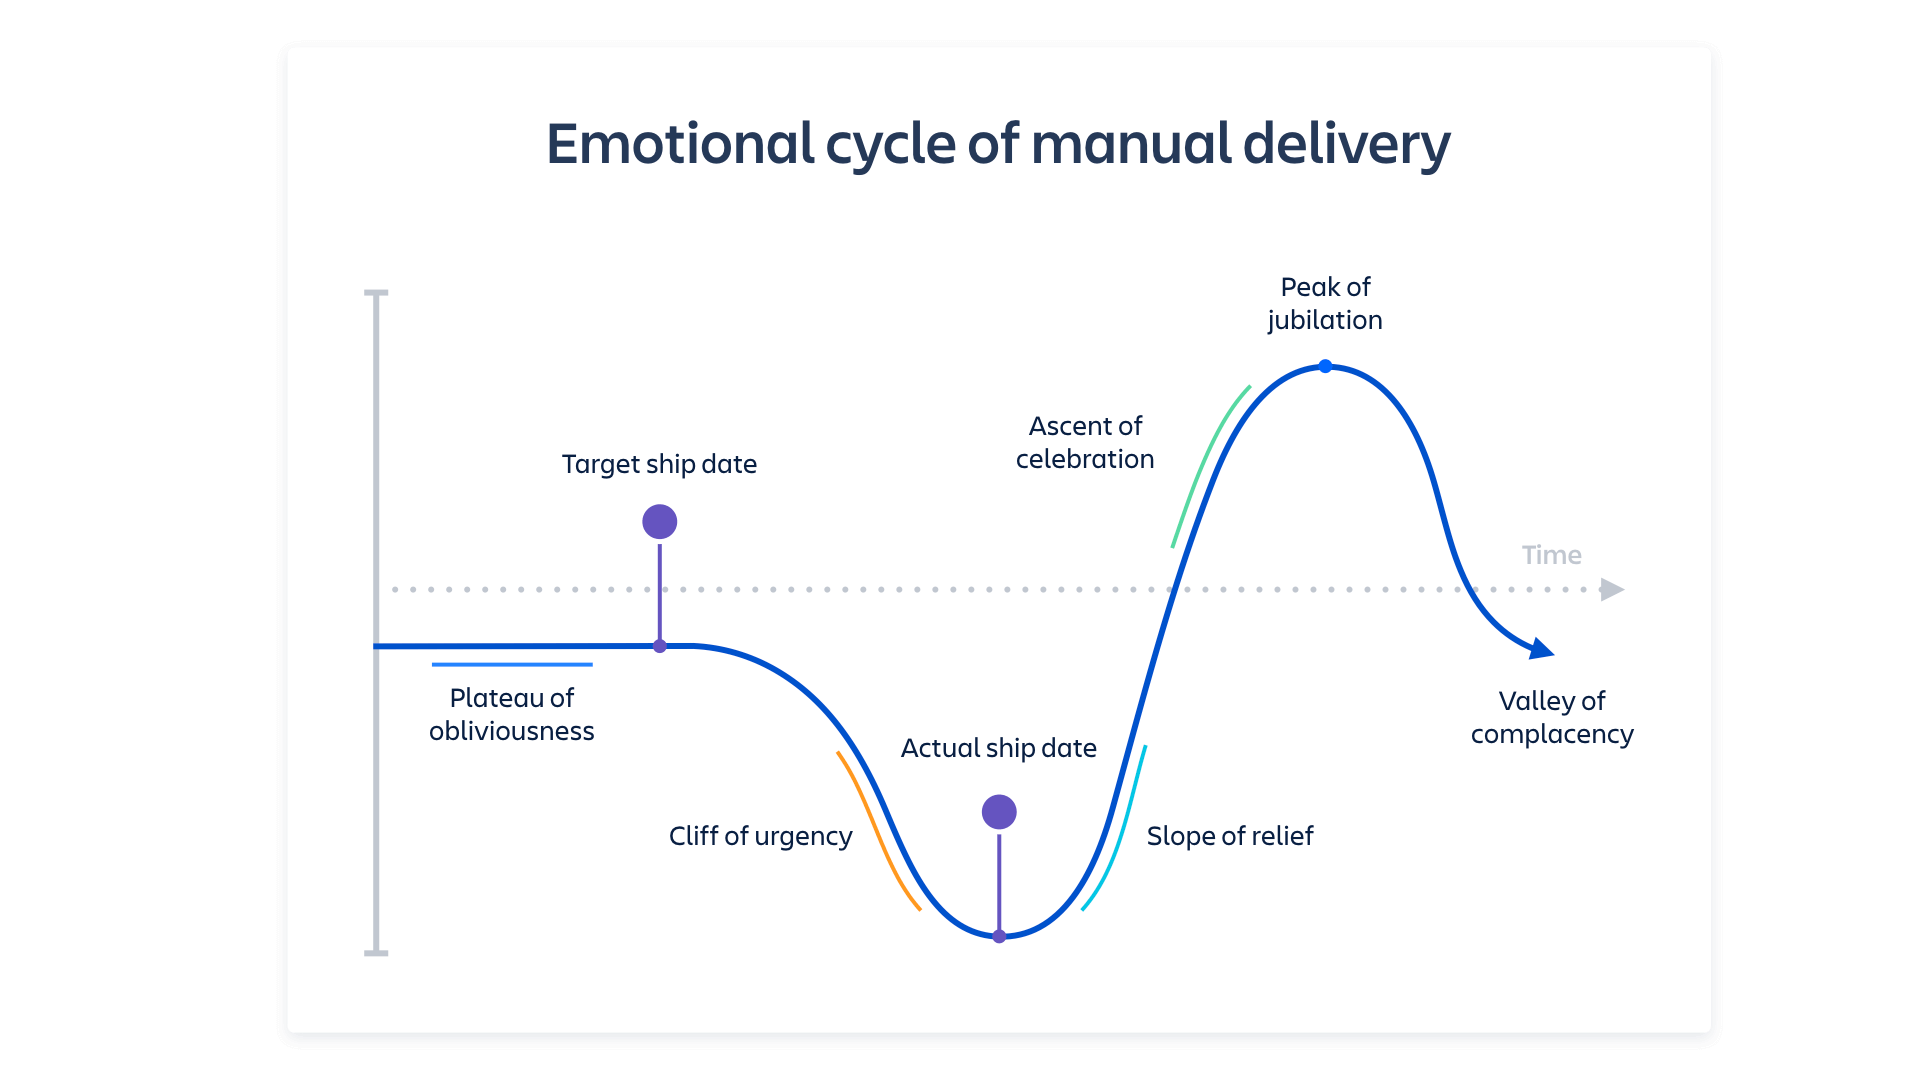 Schermafbeelding van de emotionele cyclus van handmatige levering